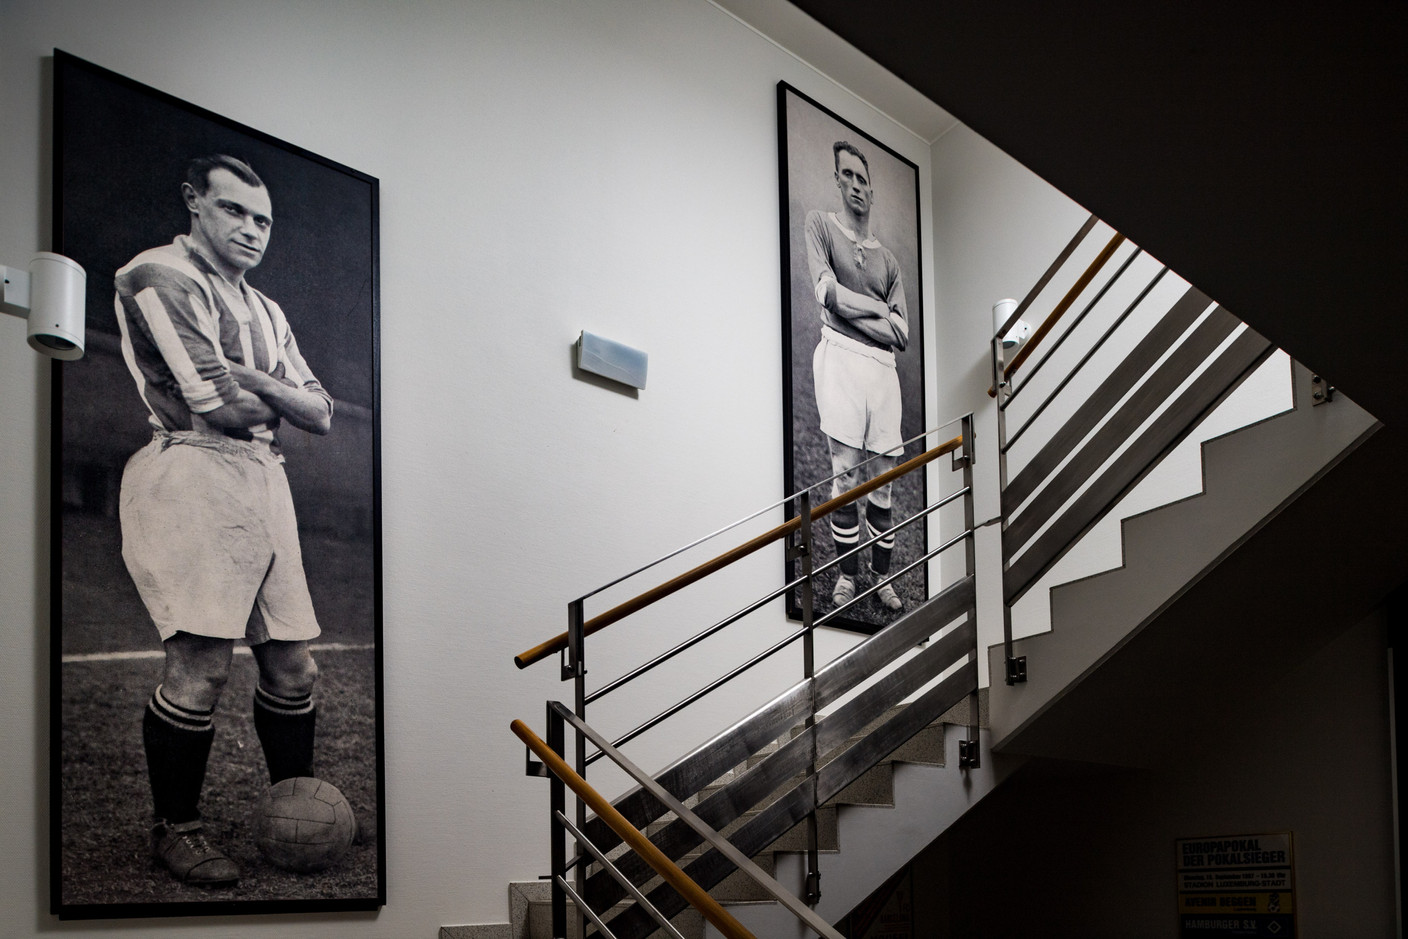 Le bâtiment principal est décoré avec des photos et des souvenirs de l’histoire du foot luxembourgeois.  (Photo: Nader Ghavami)